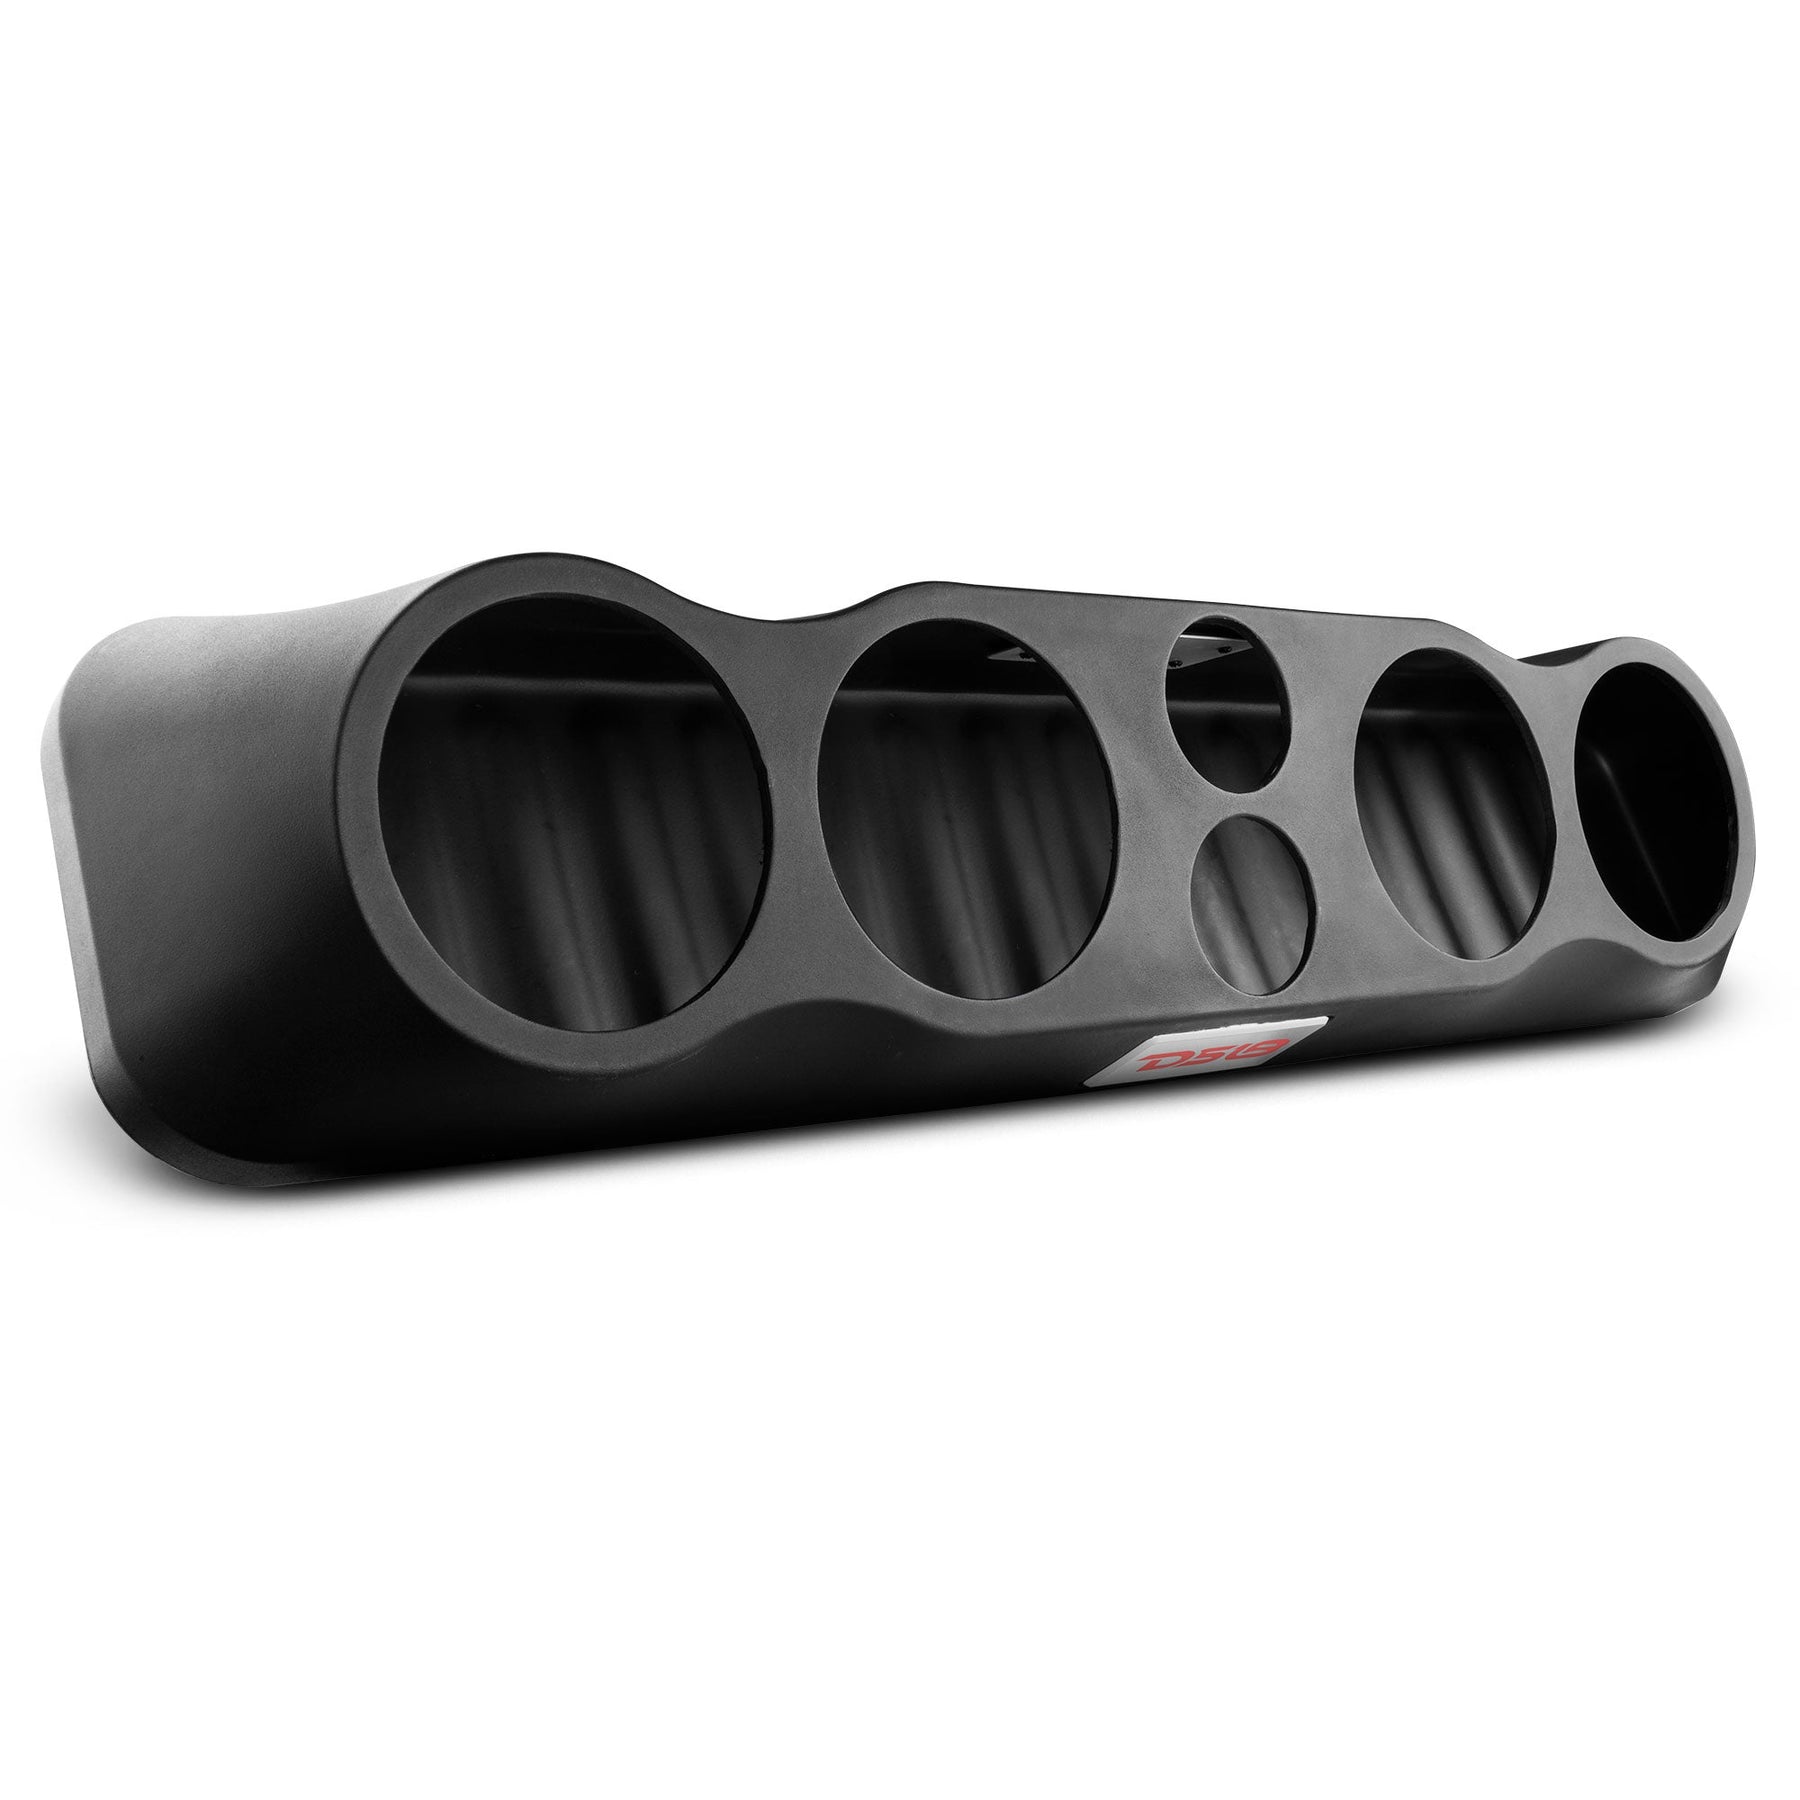 35" High Density ABS Universal Speakers Enclosure 4 X 6.5" and 2 x 3" Tweeters